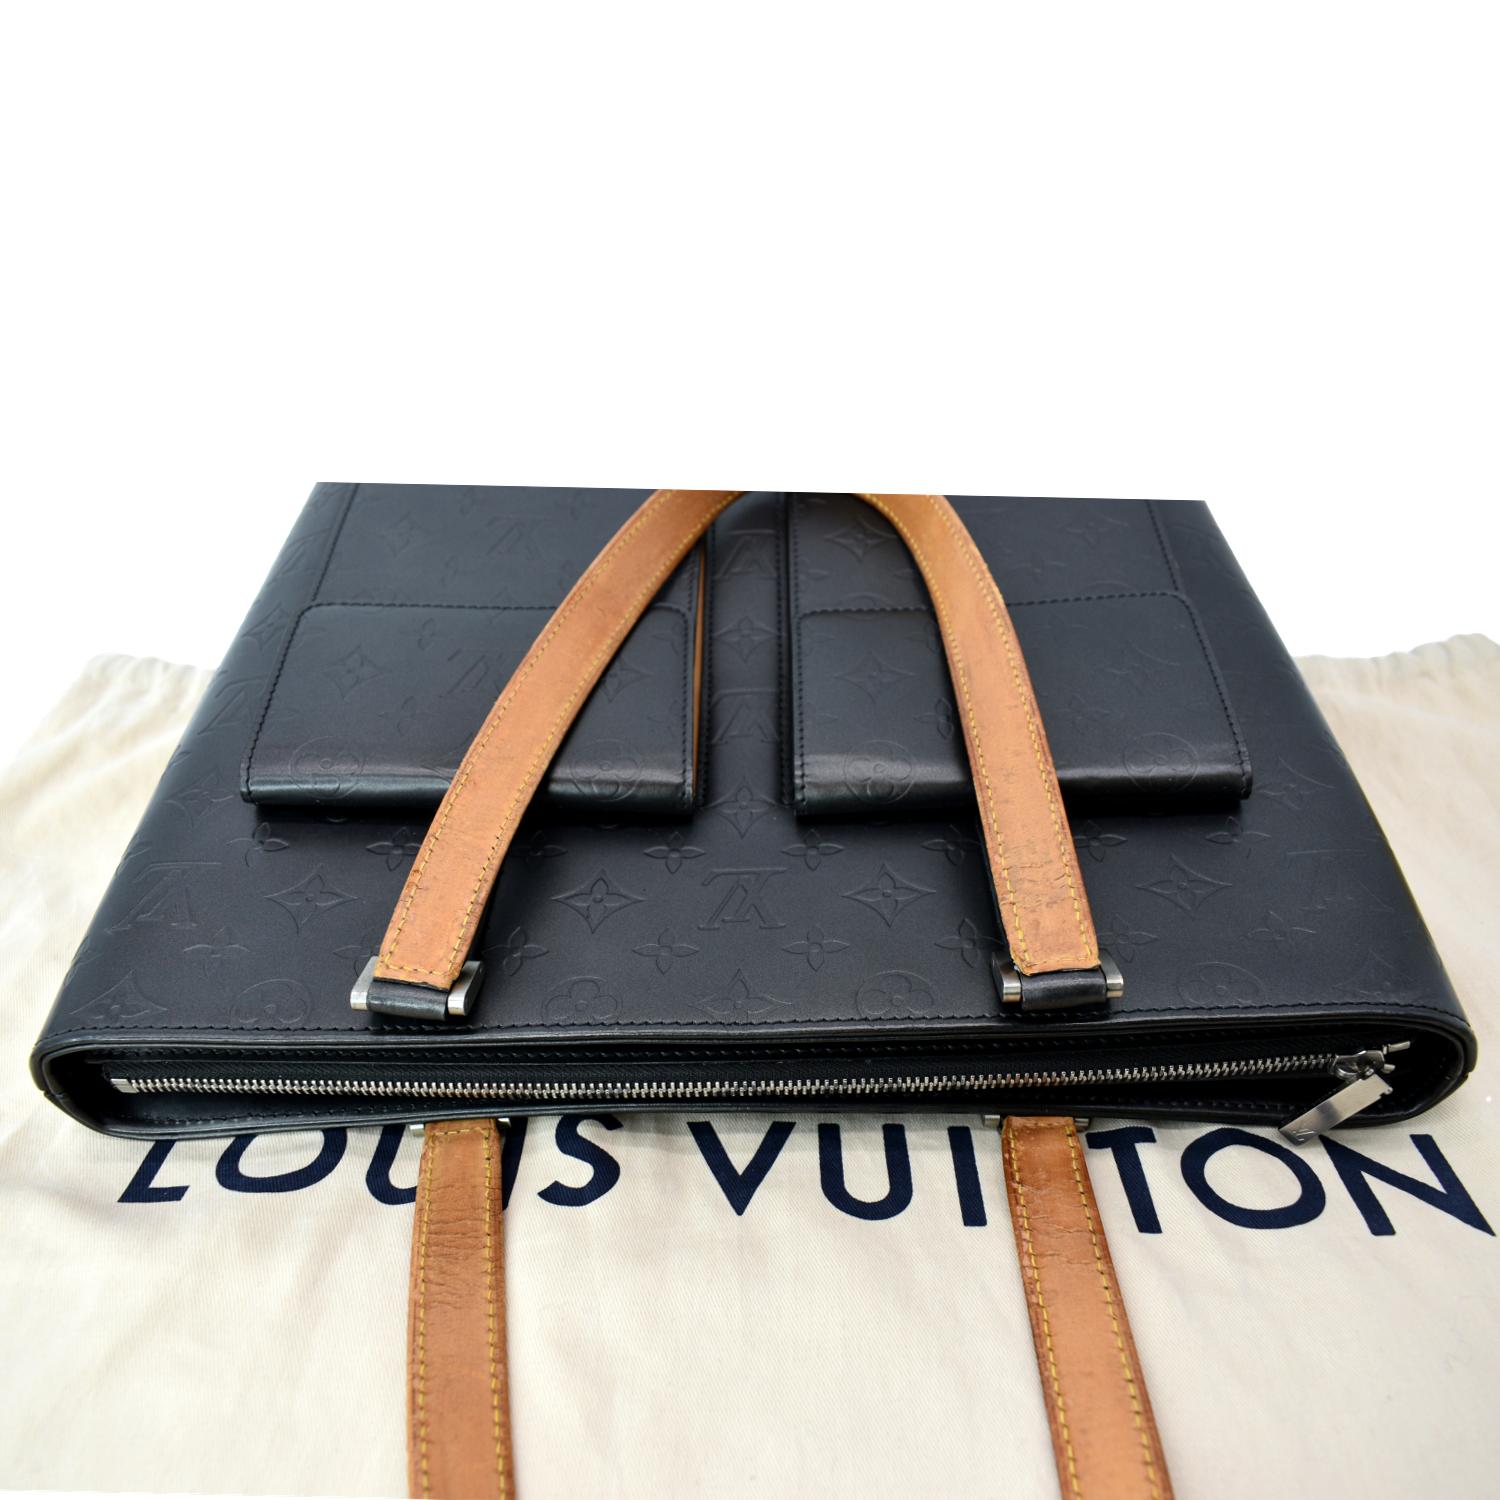 Unboxing Louis Vuitton Lock It tote bag 🔒❤️ 